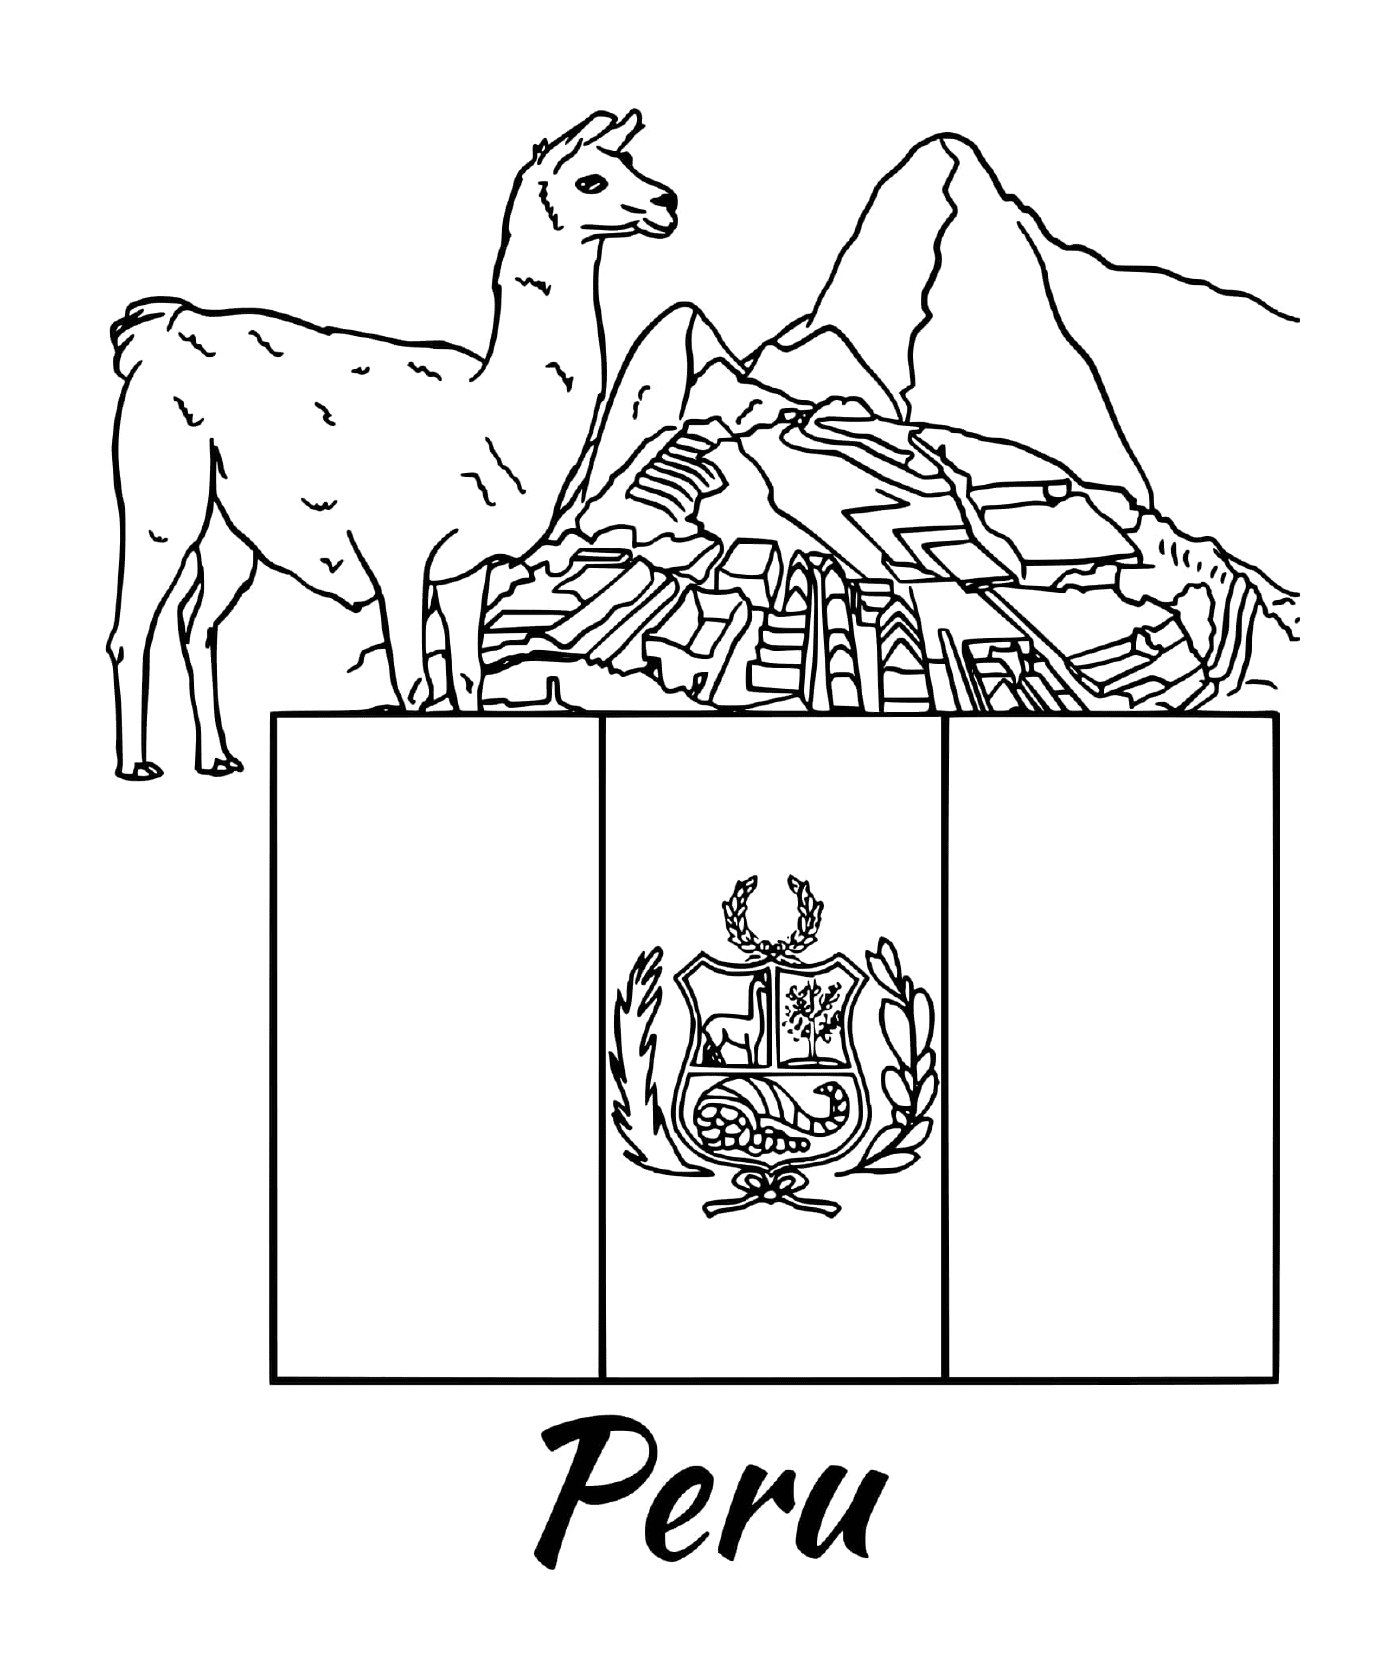  पेरू, अलाका का झंडा 